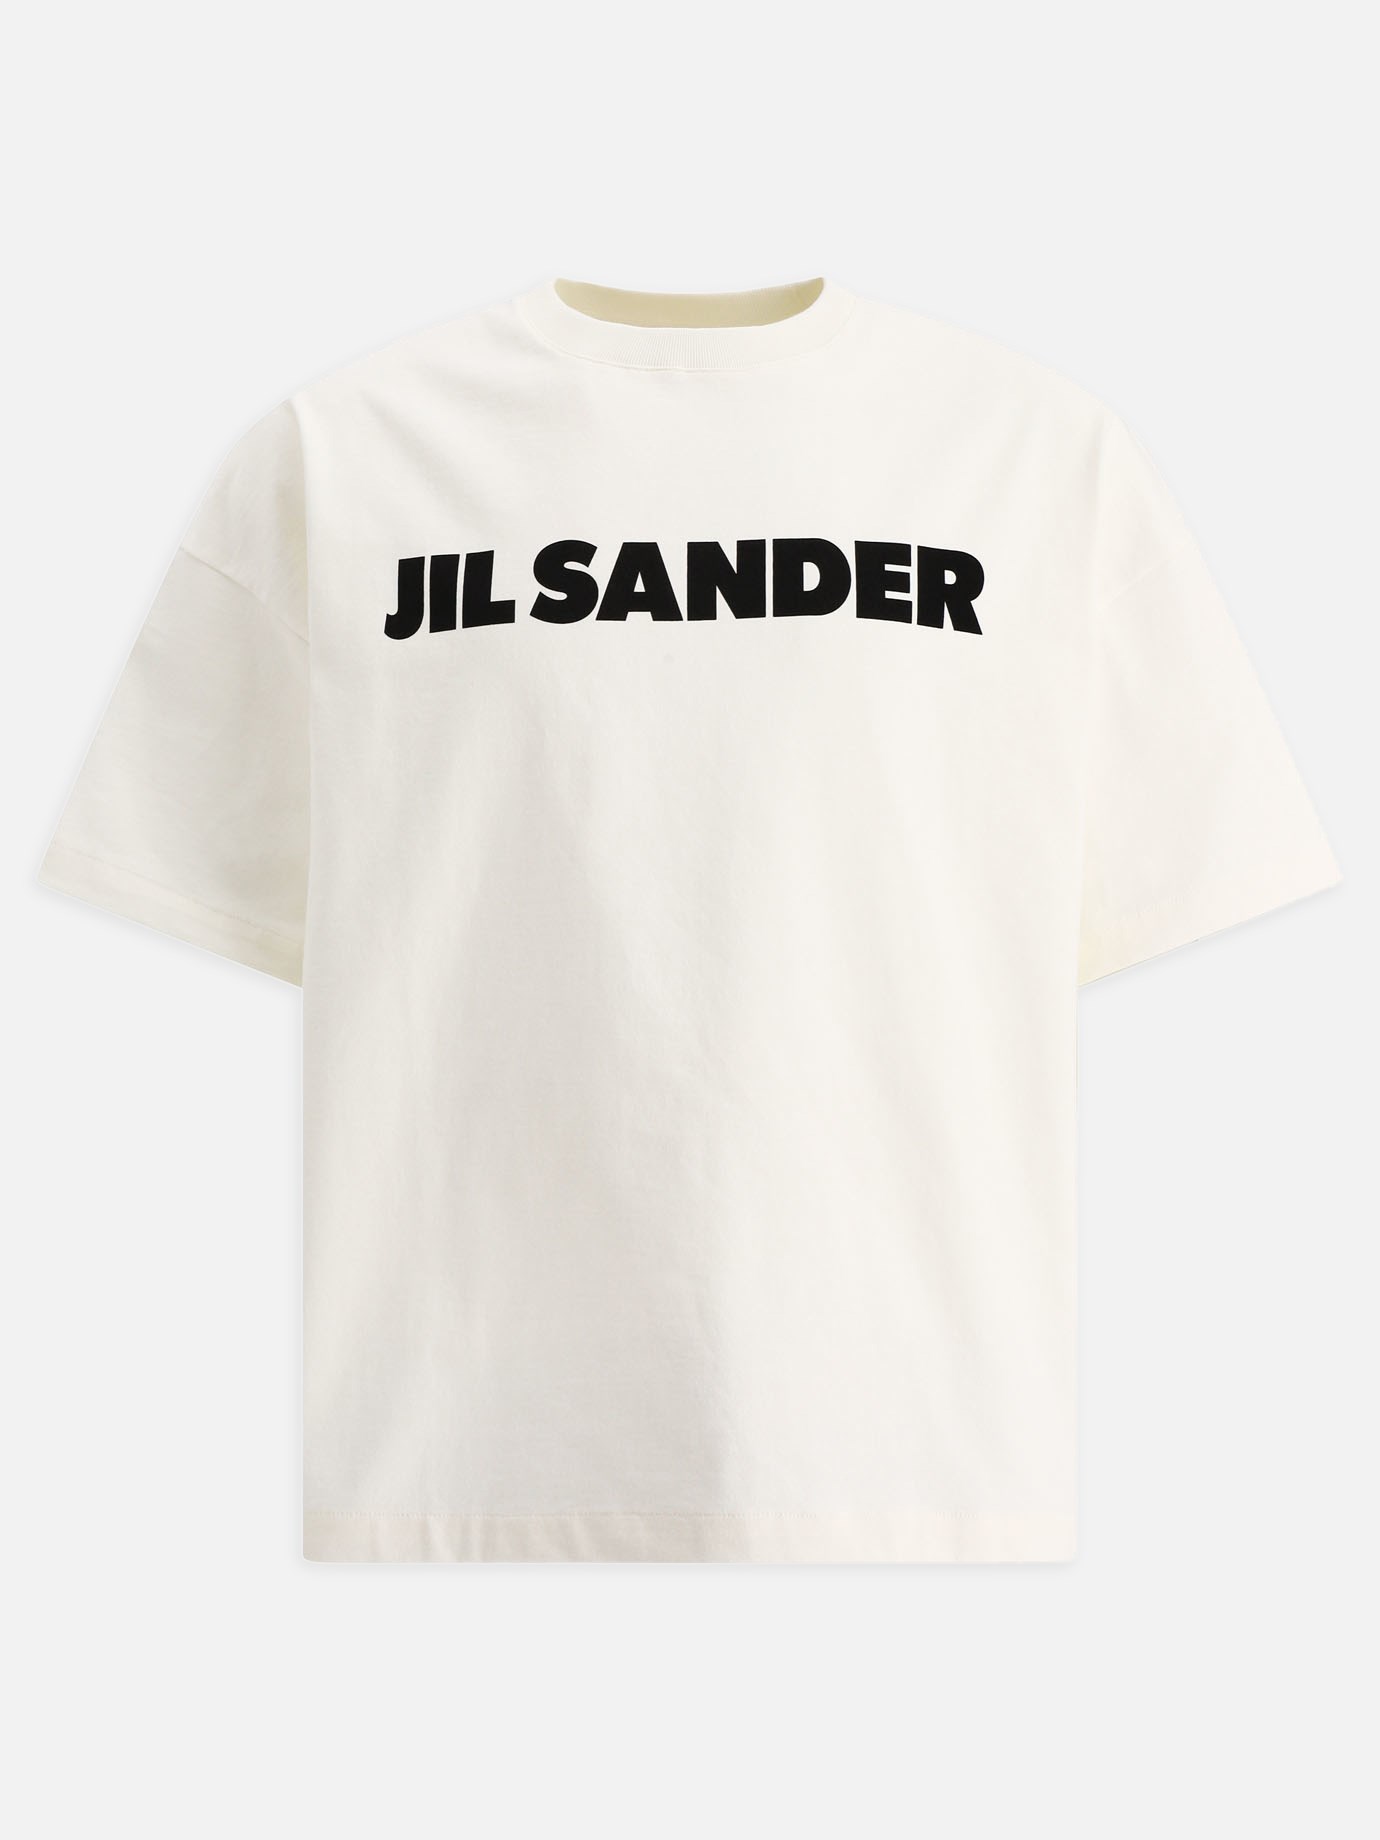  Jil Sander  t-shirtby Jil Sander - 0